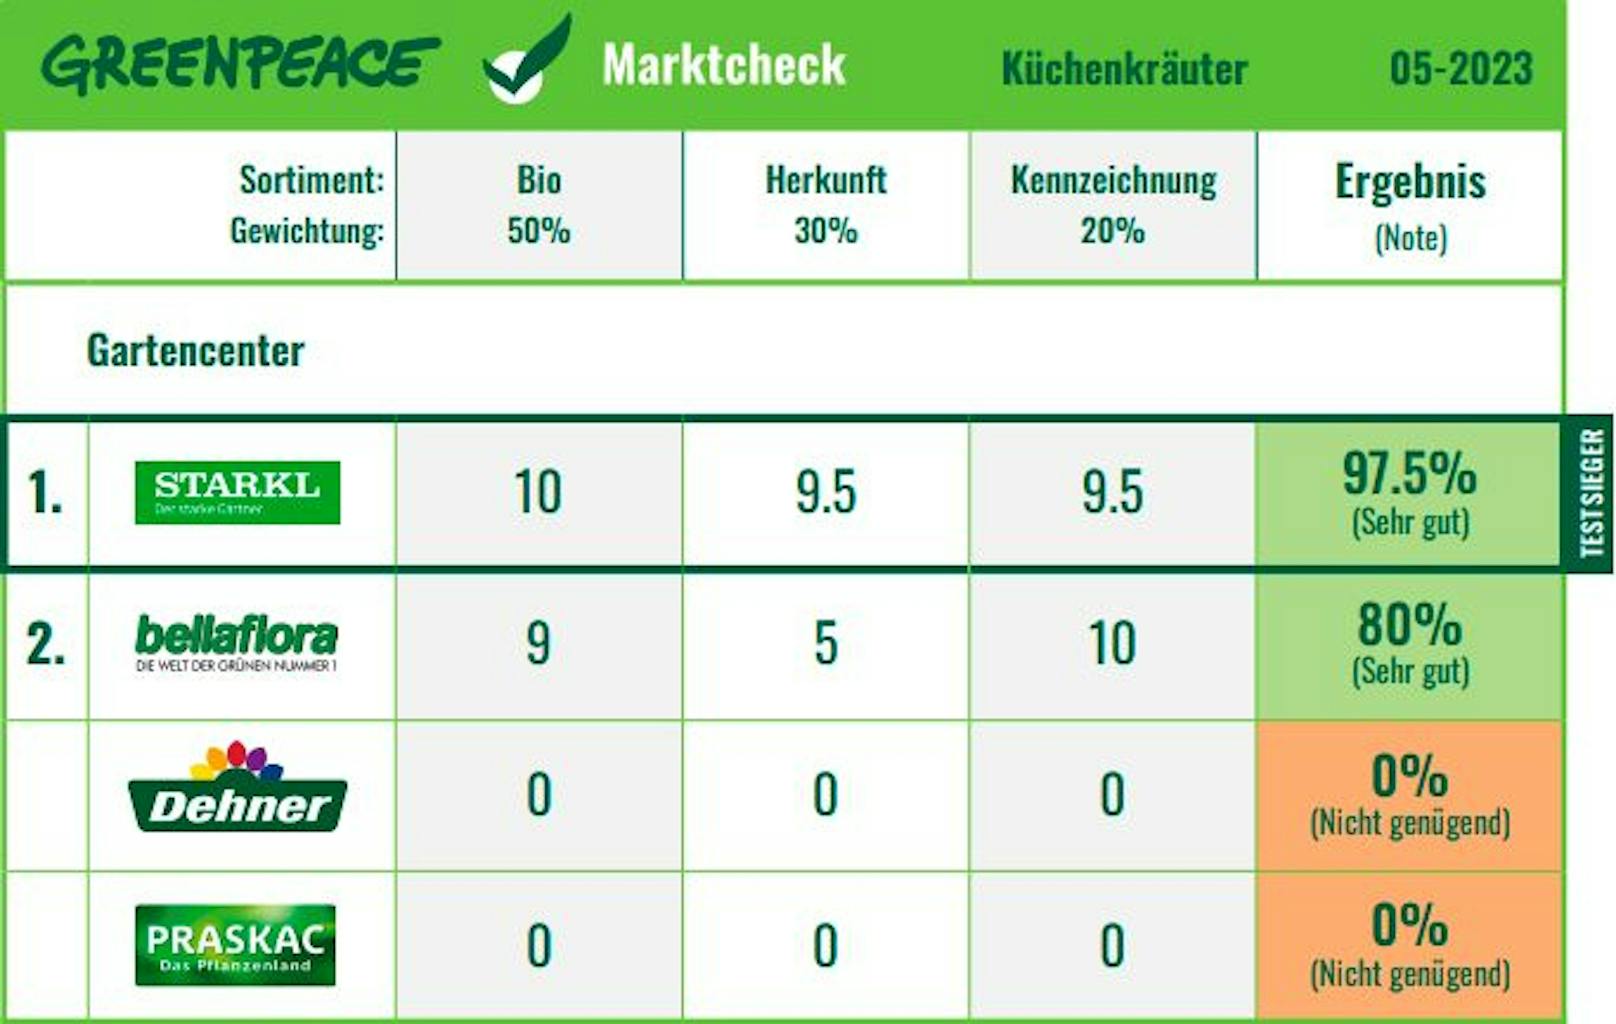 <strong>Gartencenter</strong> im Ranking des Küchenkräuter-Marktchecks von Greenpeace.